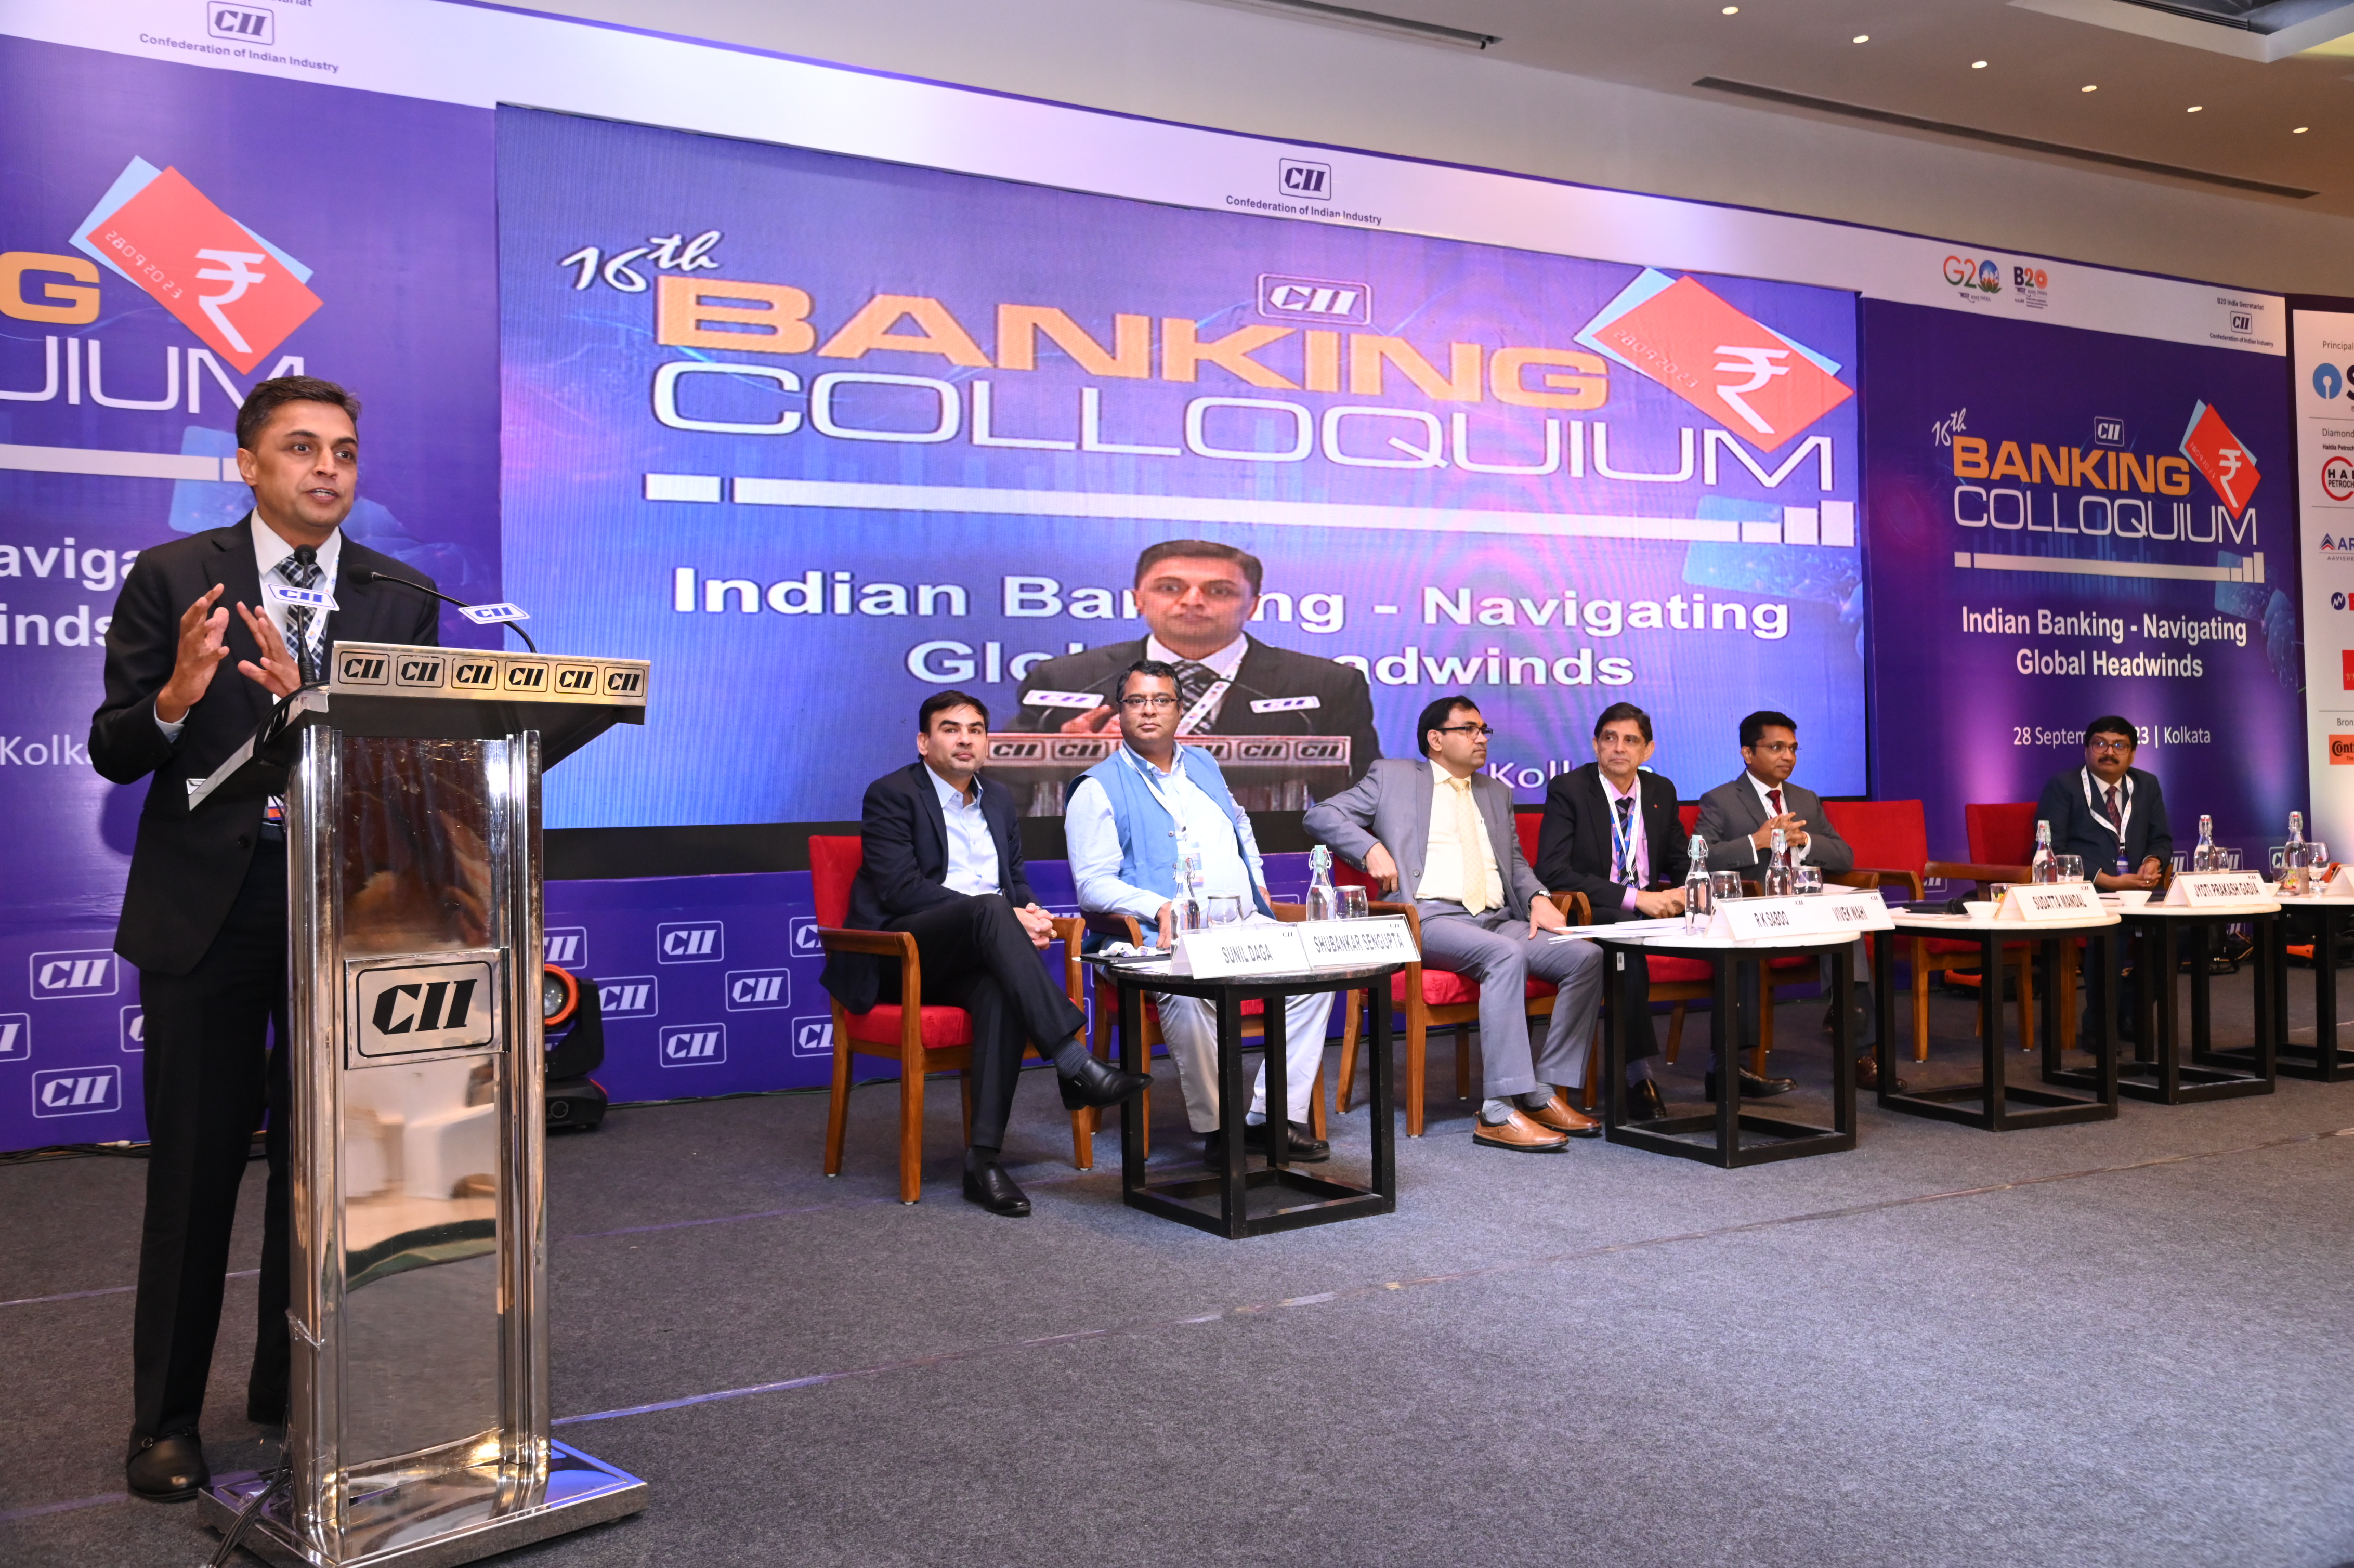 CII 16th Banking Colloquium 2023